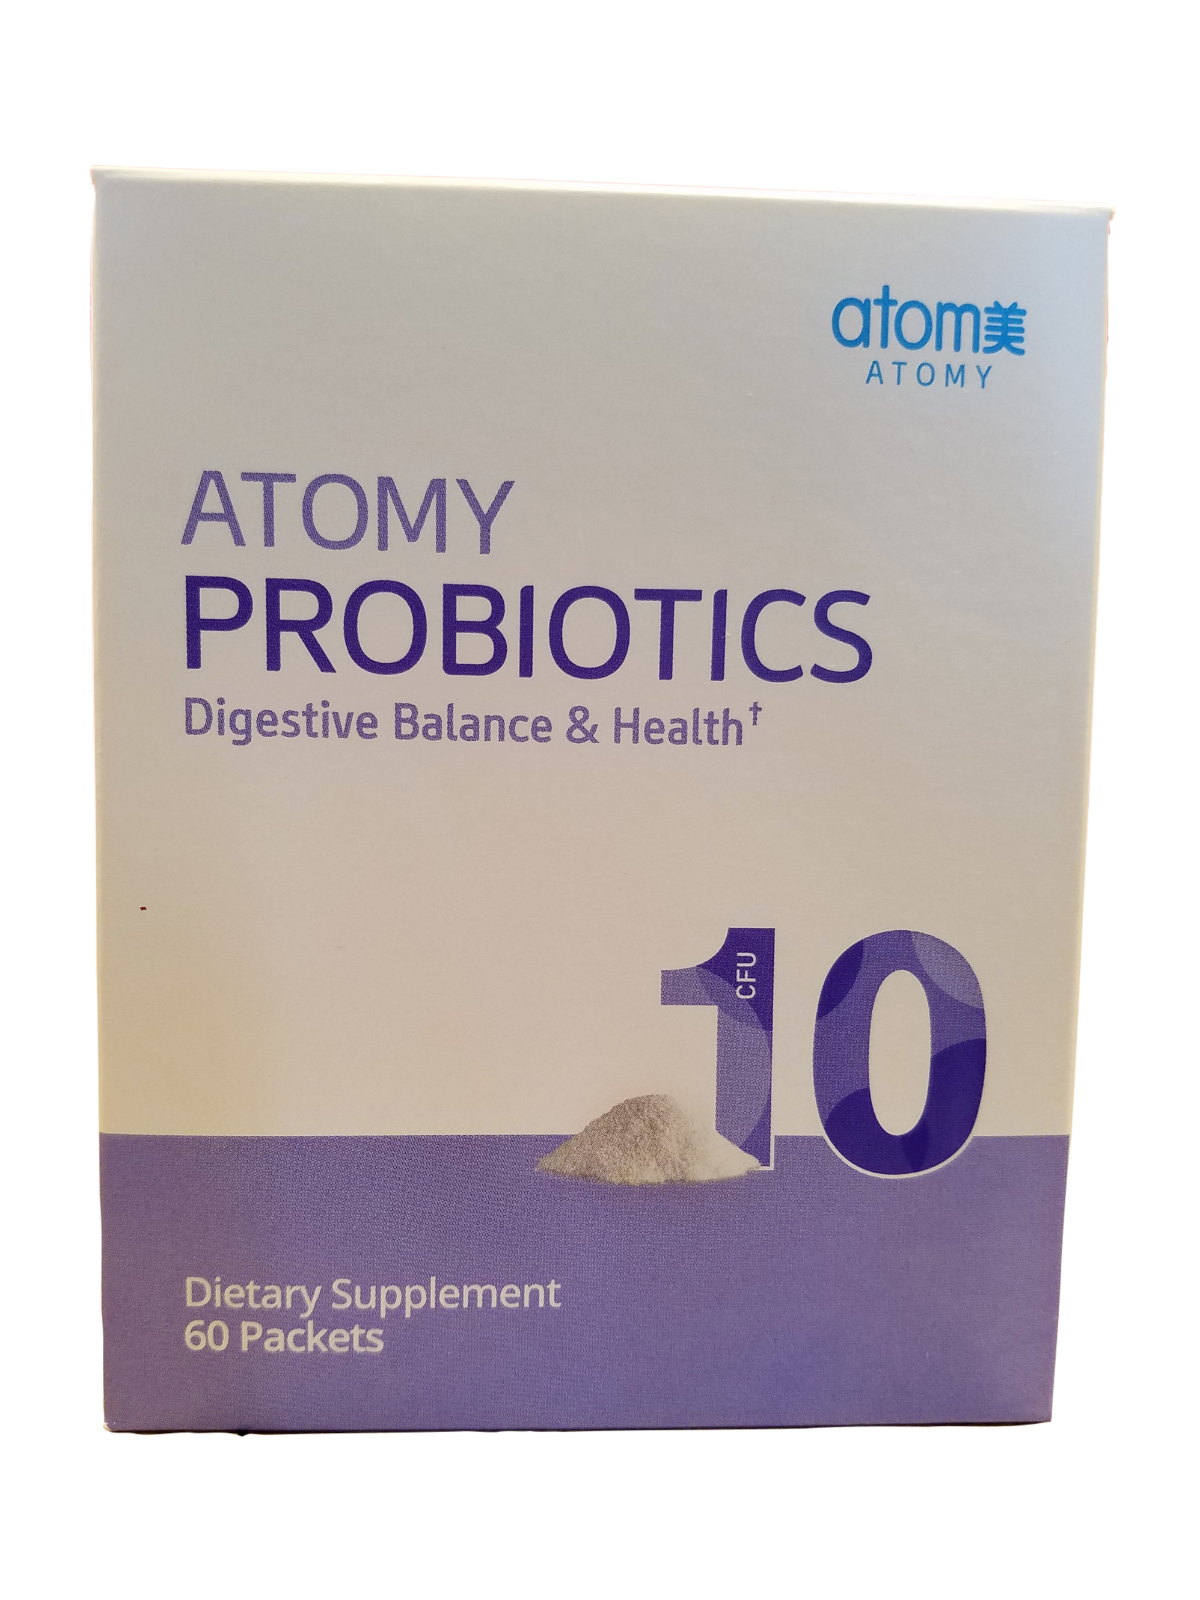 atomy probiotics